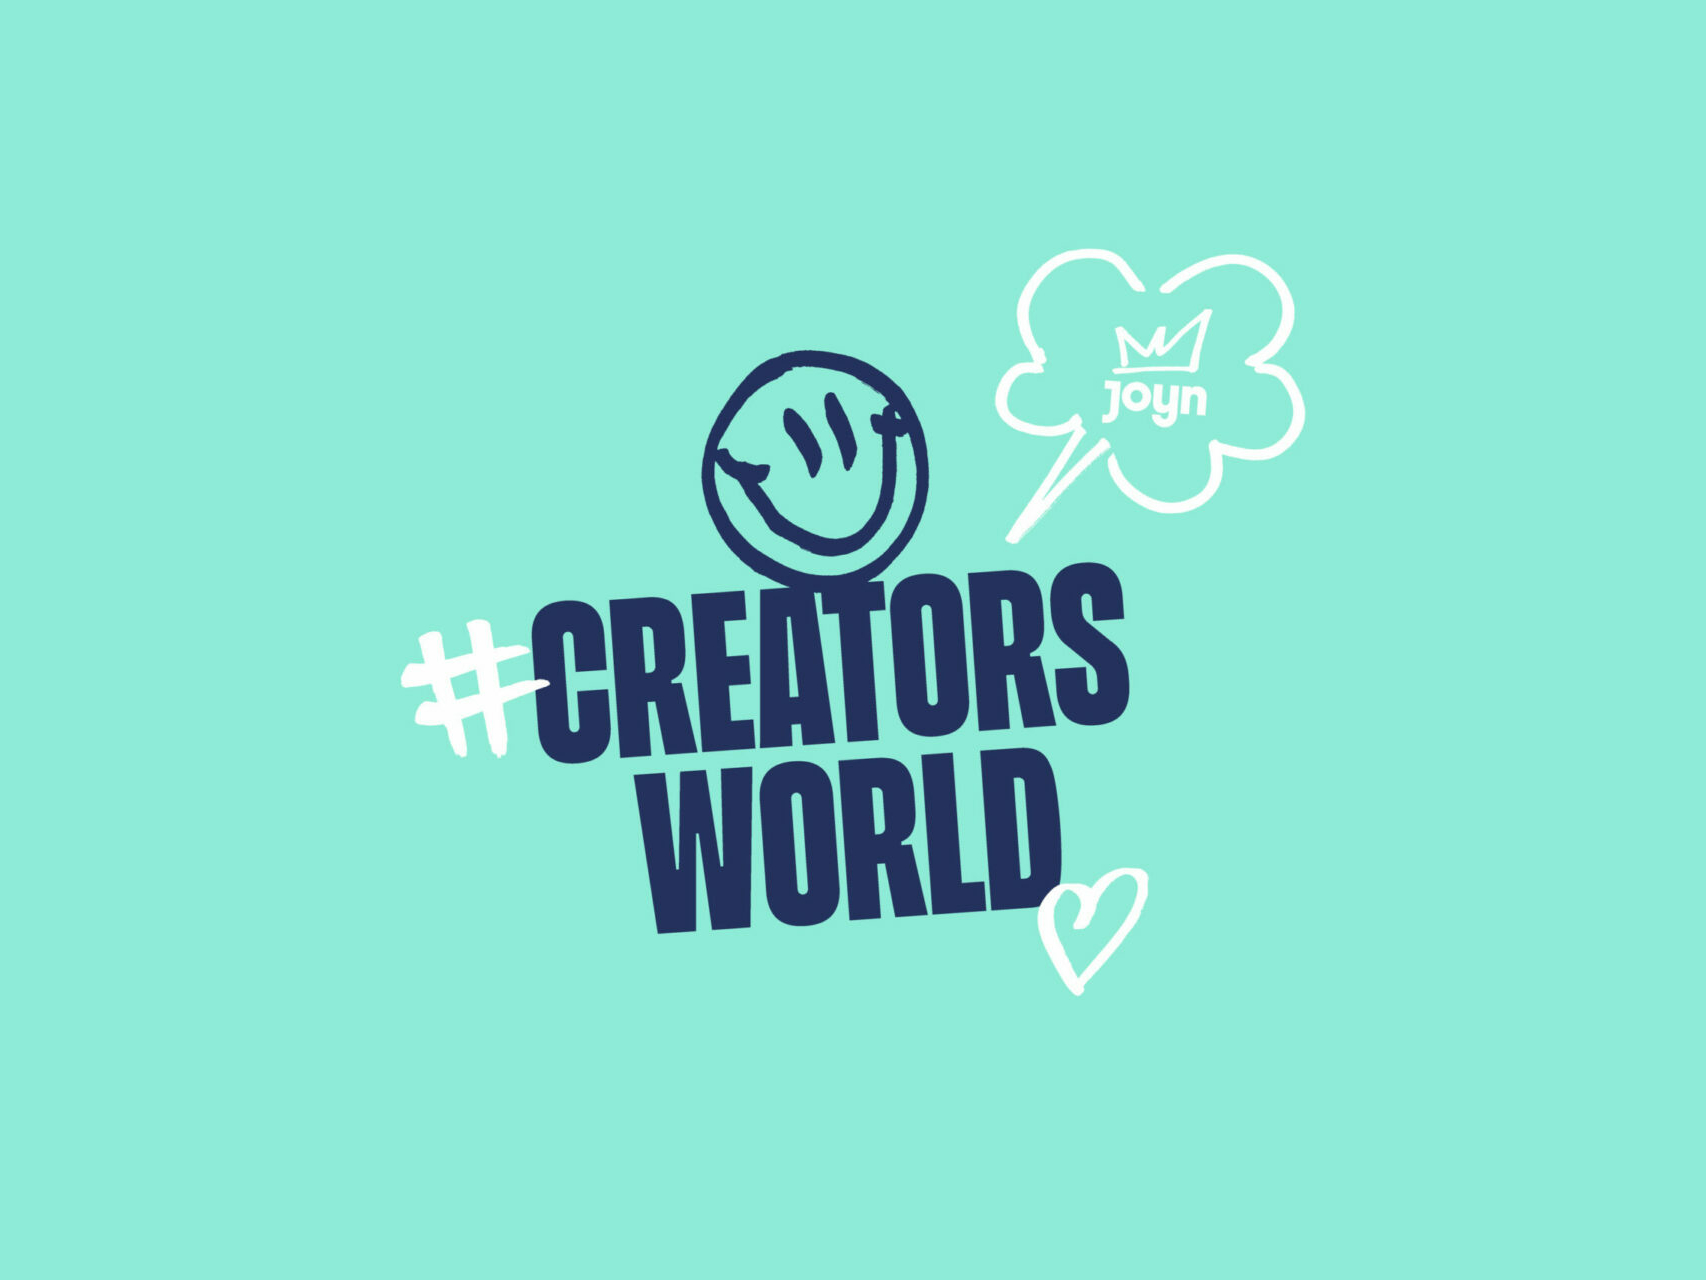 Joyn Original Serie Creators World Logodesign in blauer Farbe auf tuerkisem Hintergrund und weißen Symbolen.